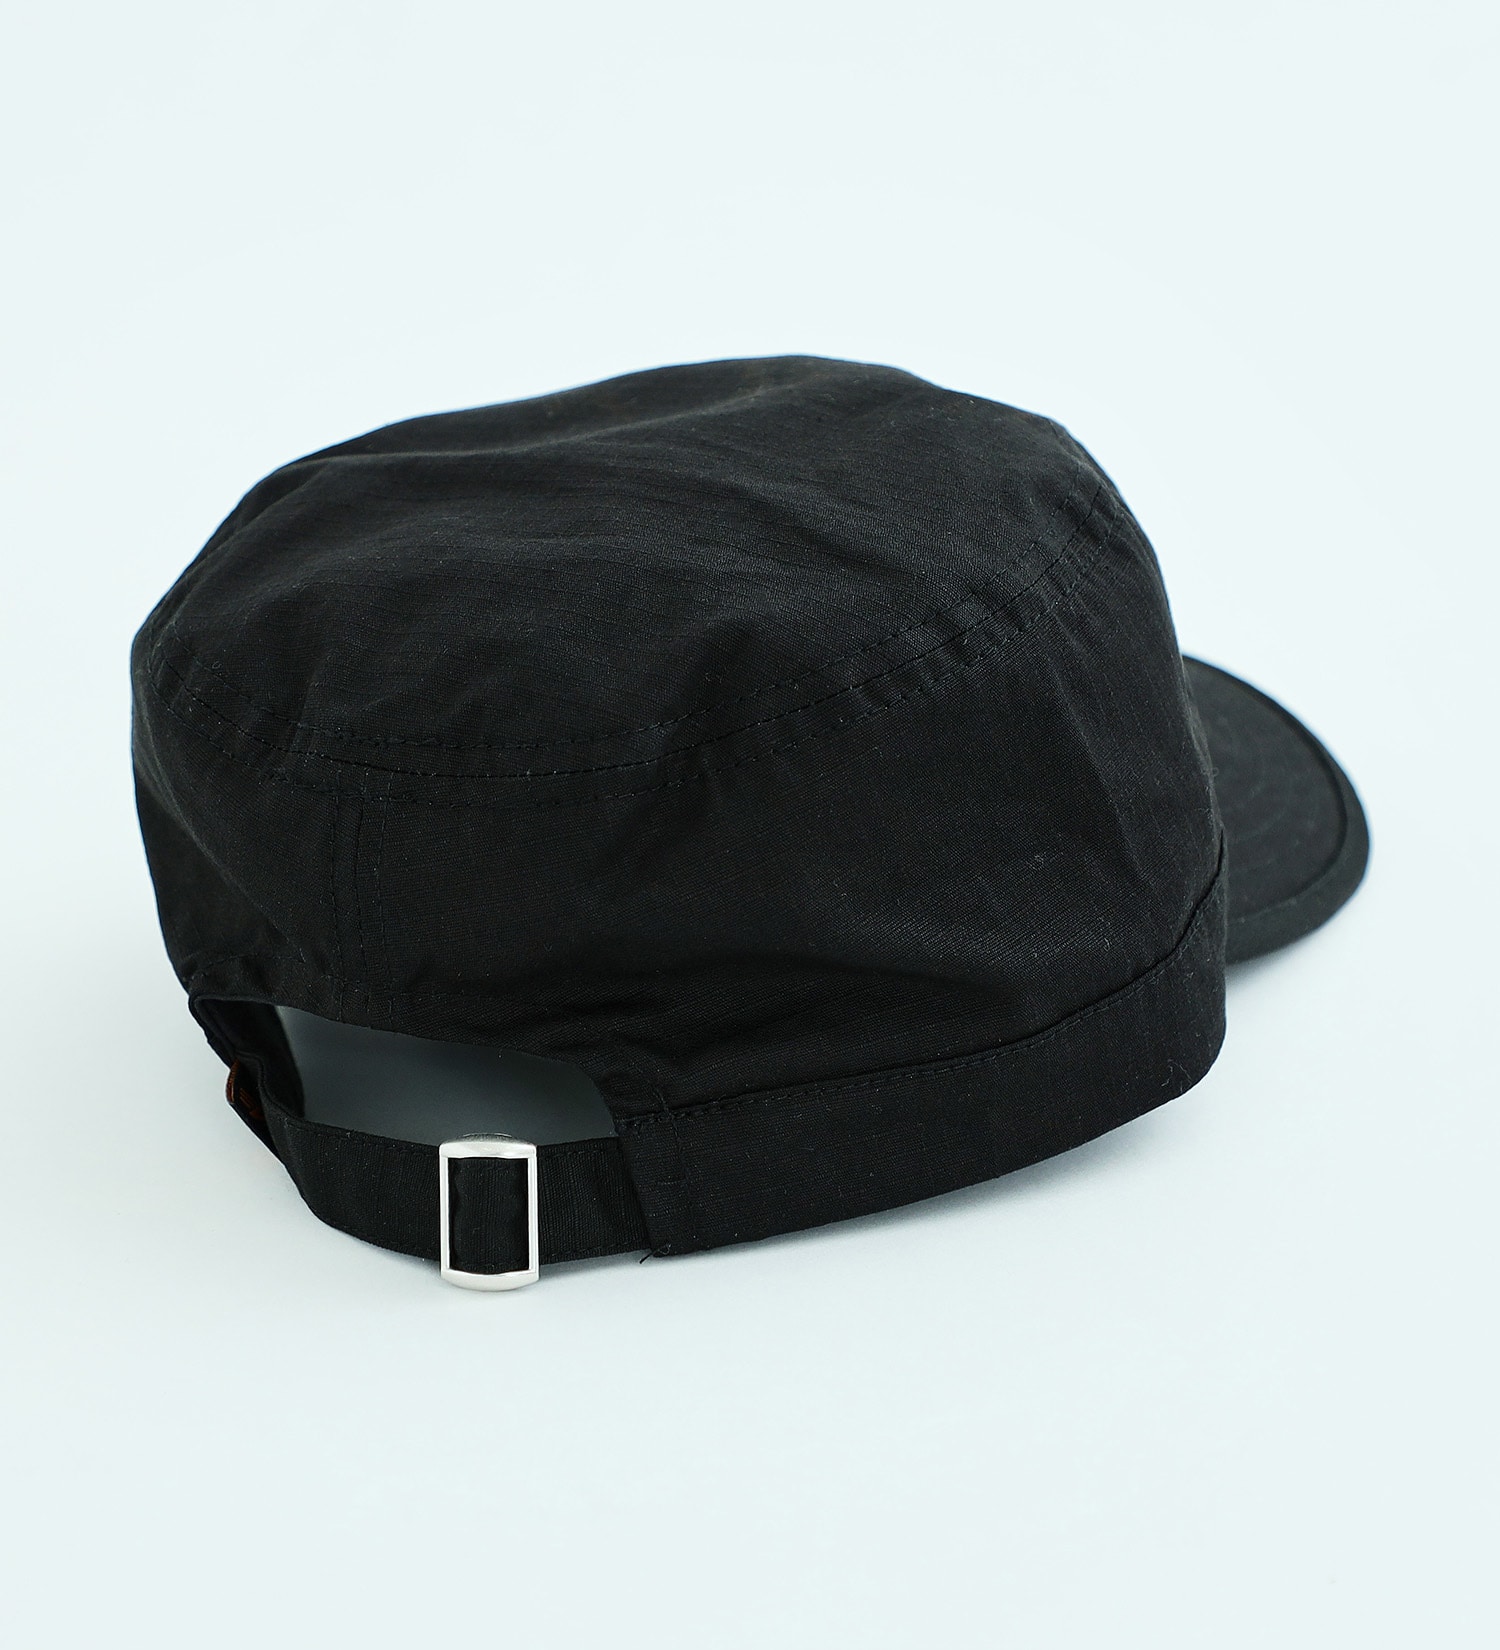 ALPHA(アルファ)のファティーグキャップ|帽子/キャップ/メンズ|ブラック